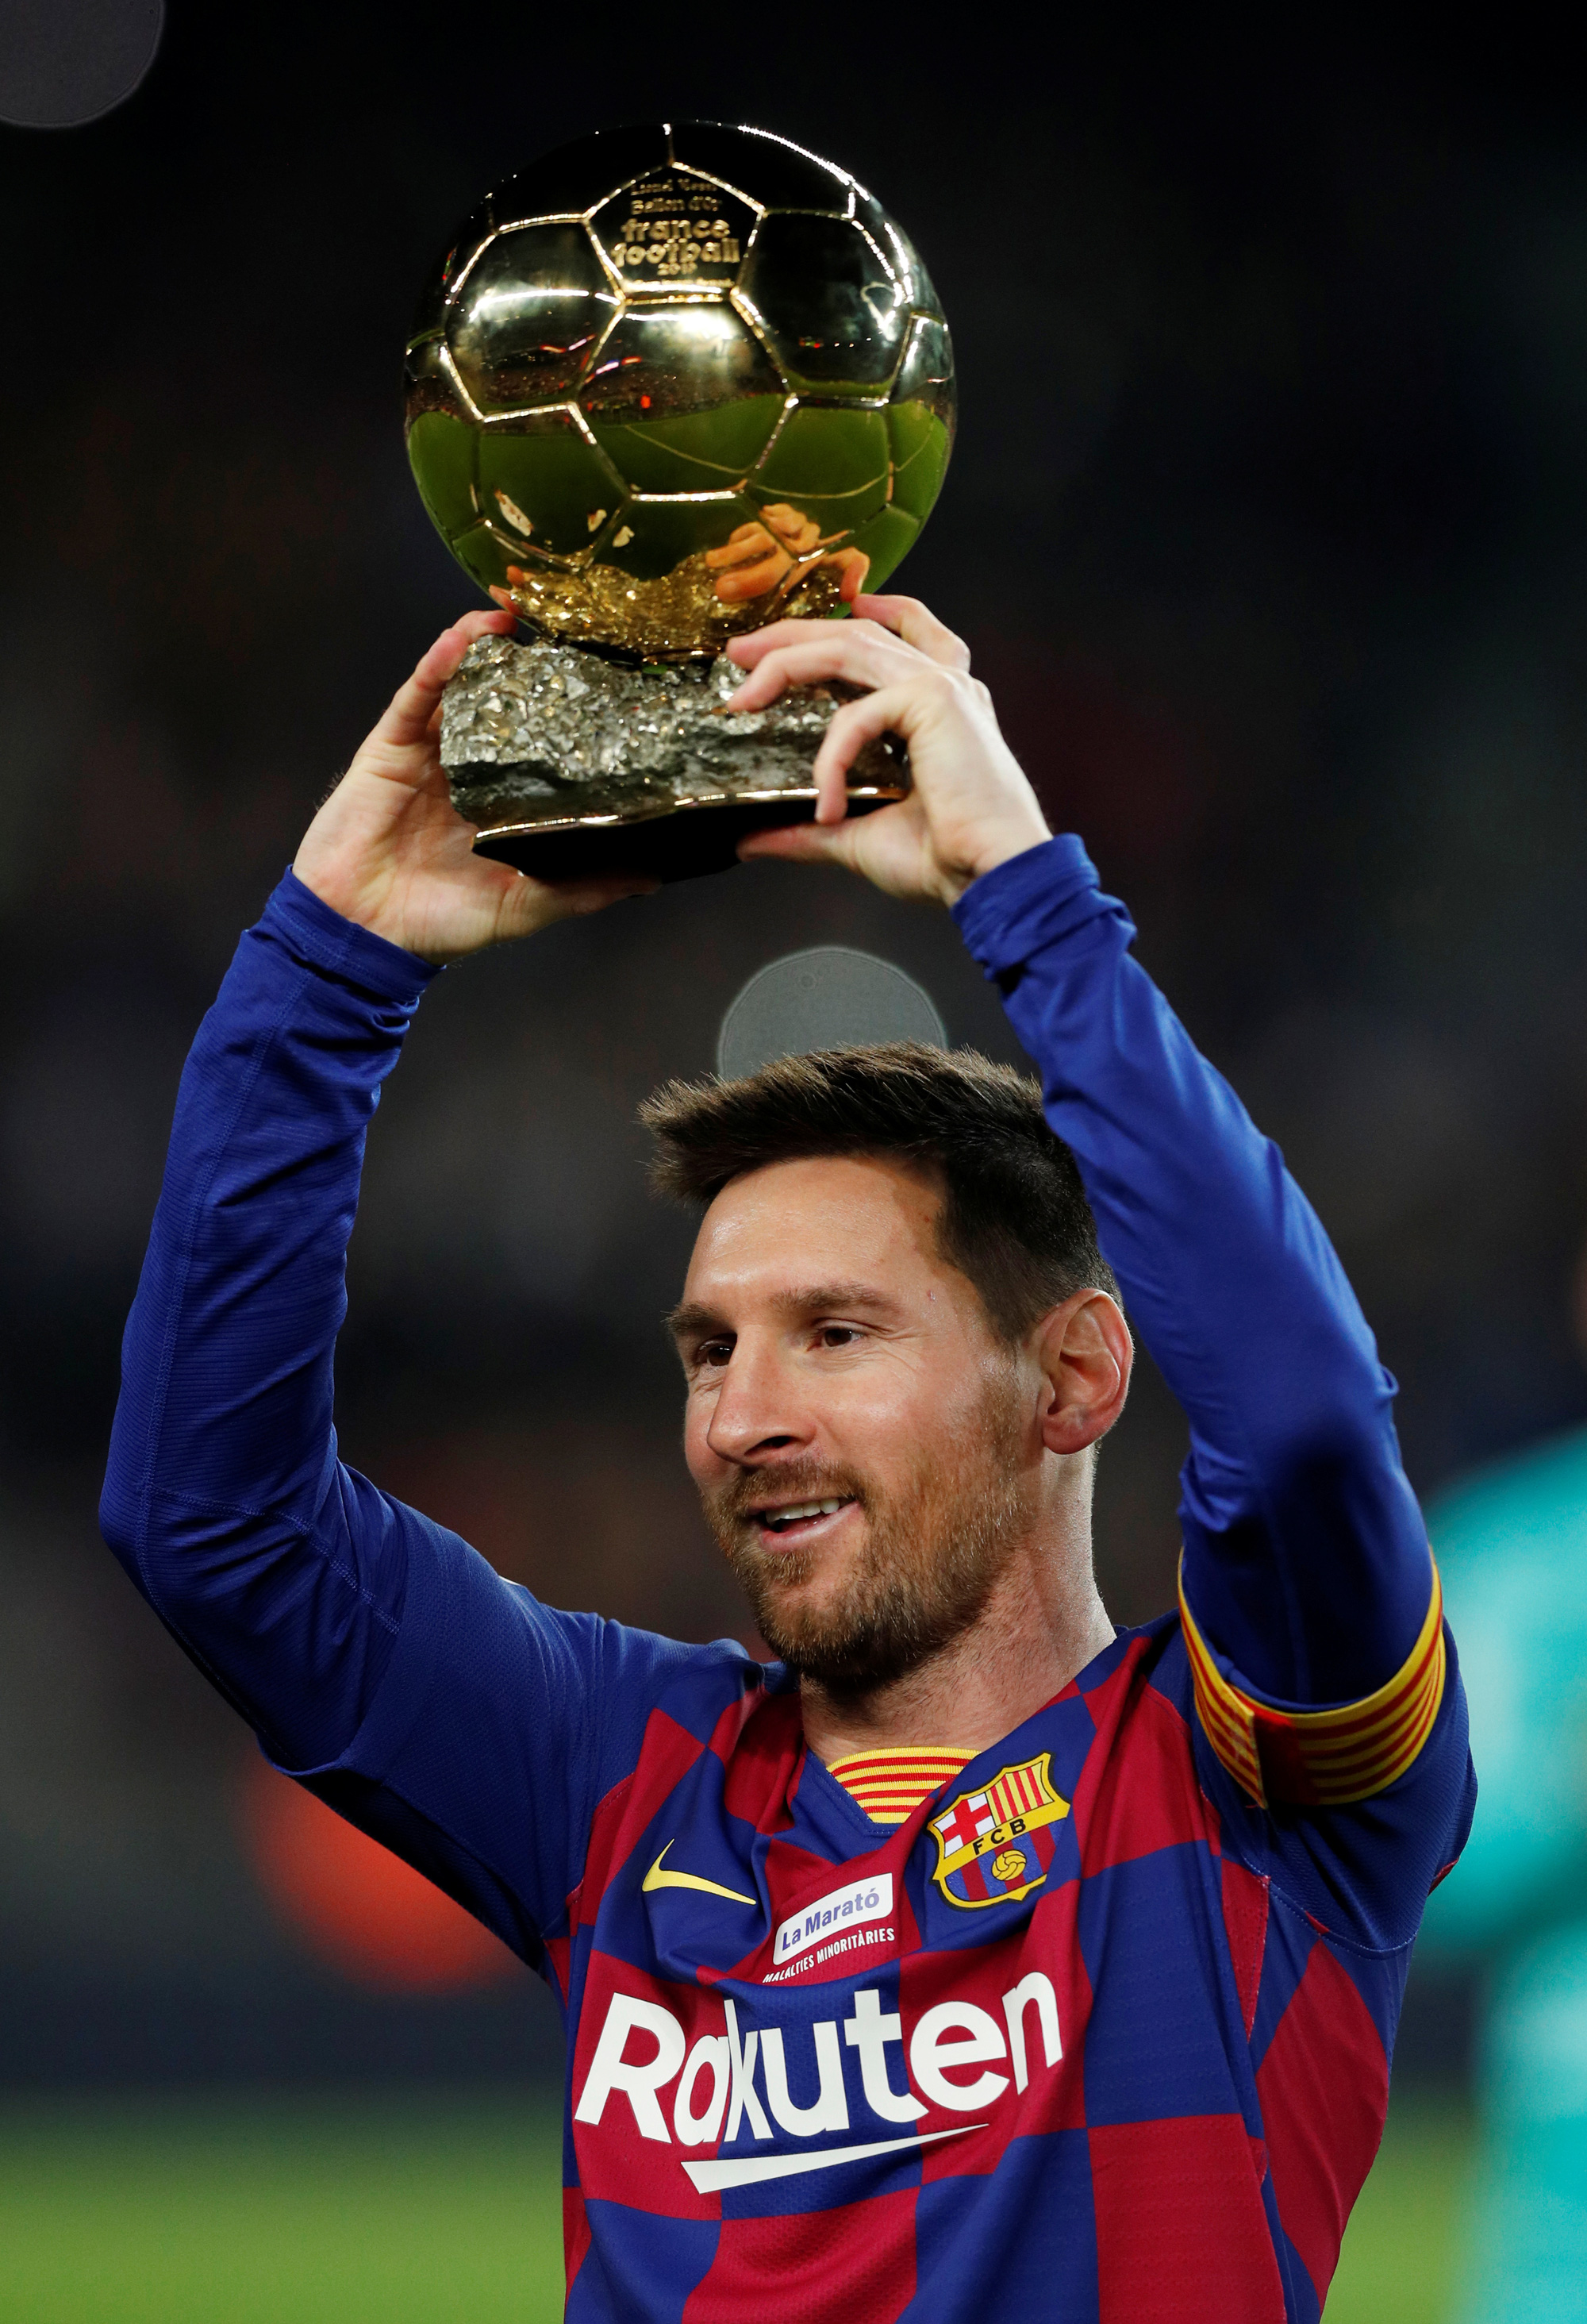 Siêu kinh điển là một trong những trận đấu được mong đợi nhất trong mùa giải bóng đá. Hình ảnh liên quan sẽ giúp bạn hiểu rõ hơn về những kỷ niệm đáng nhớ mà Messi đã trải qua khi chơi bóng, đồng thời đánh giá đúng giá trị của những người lao động.